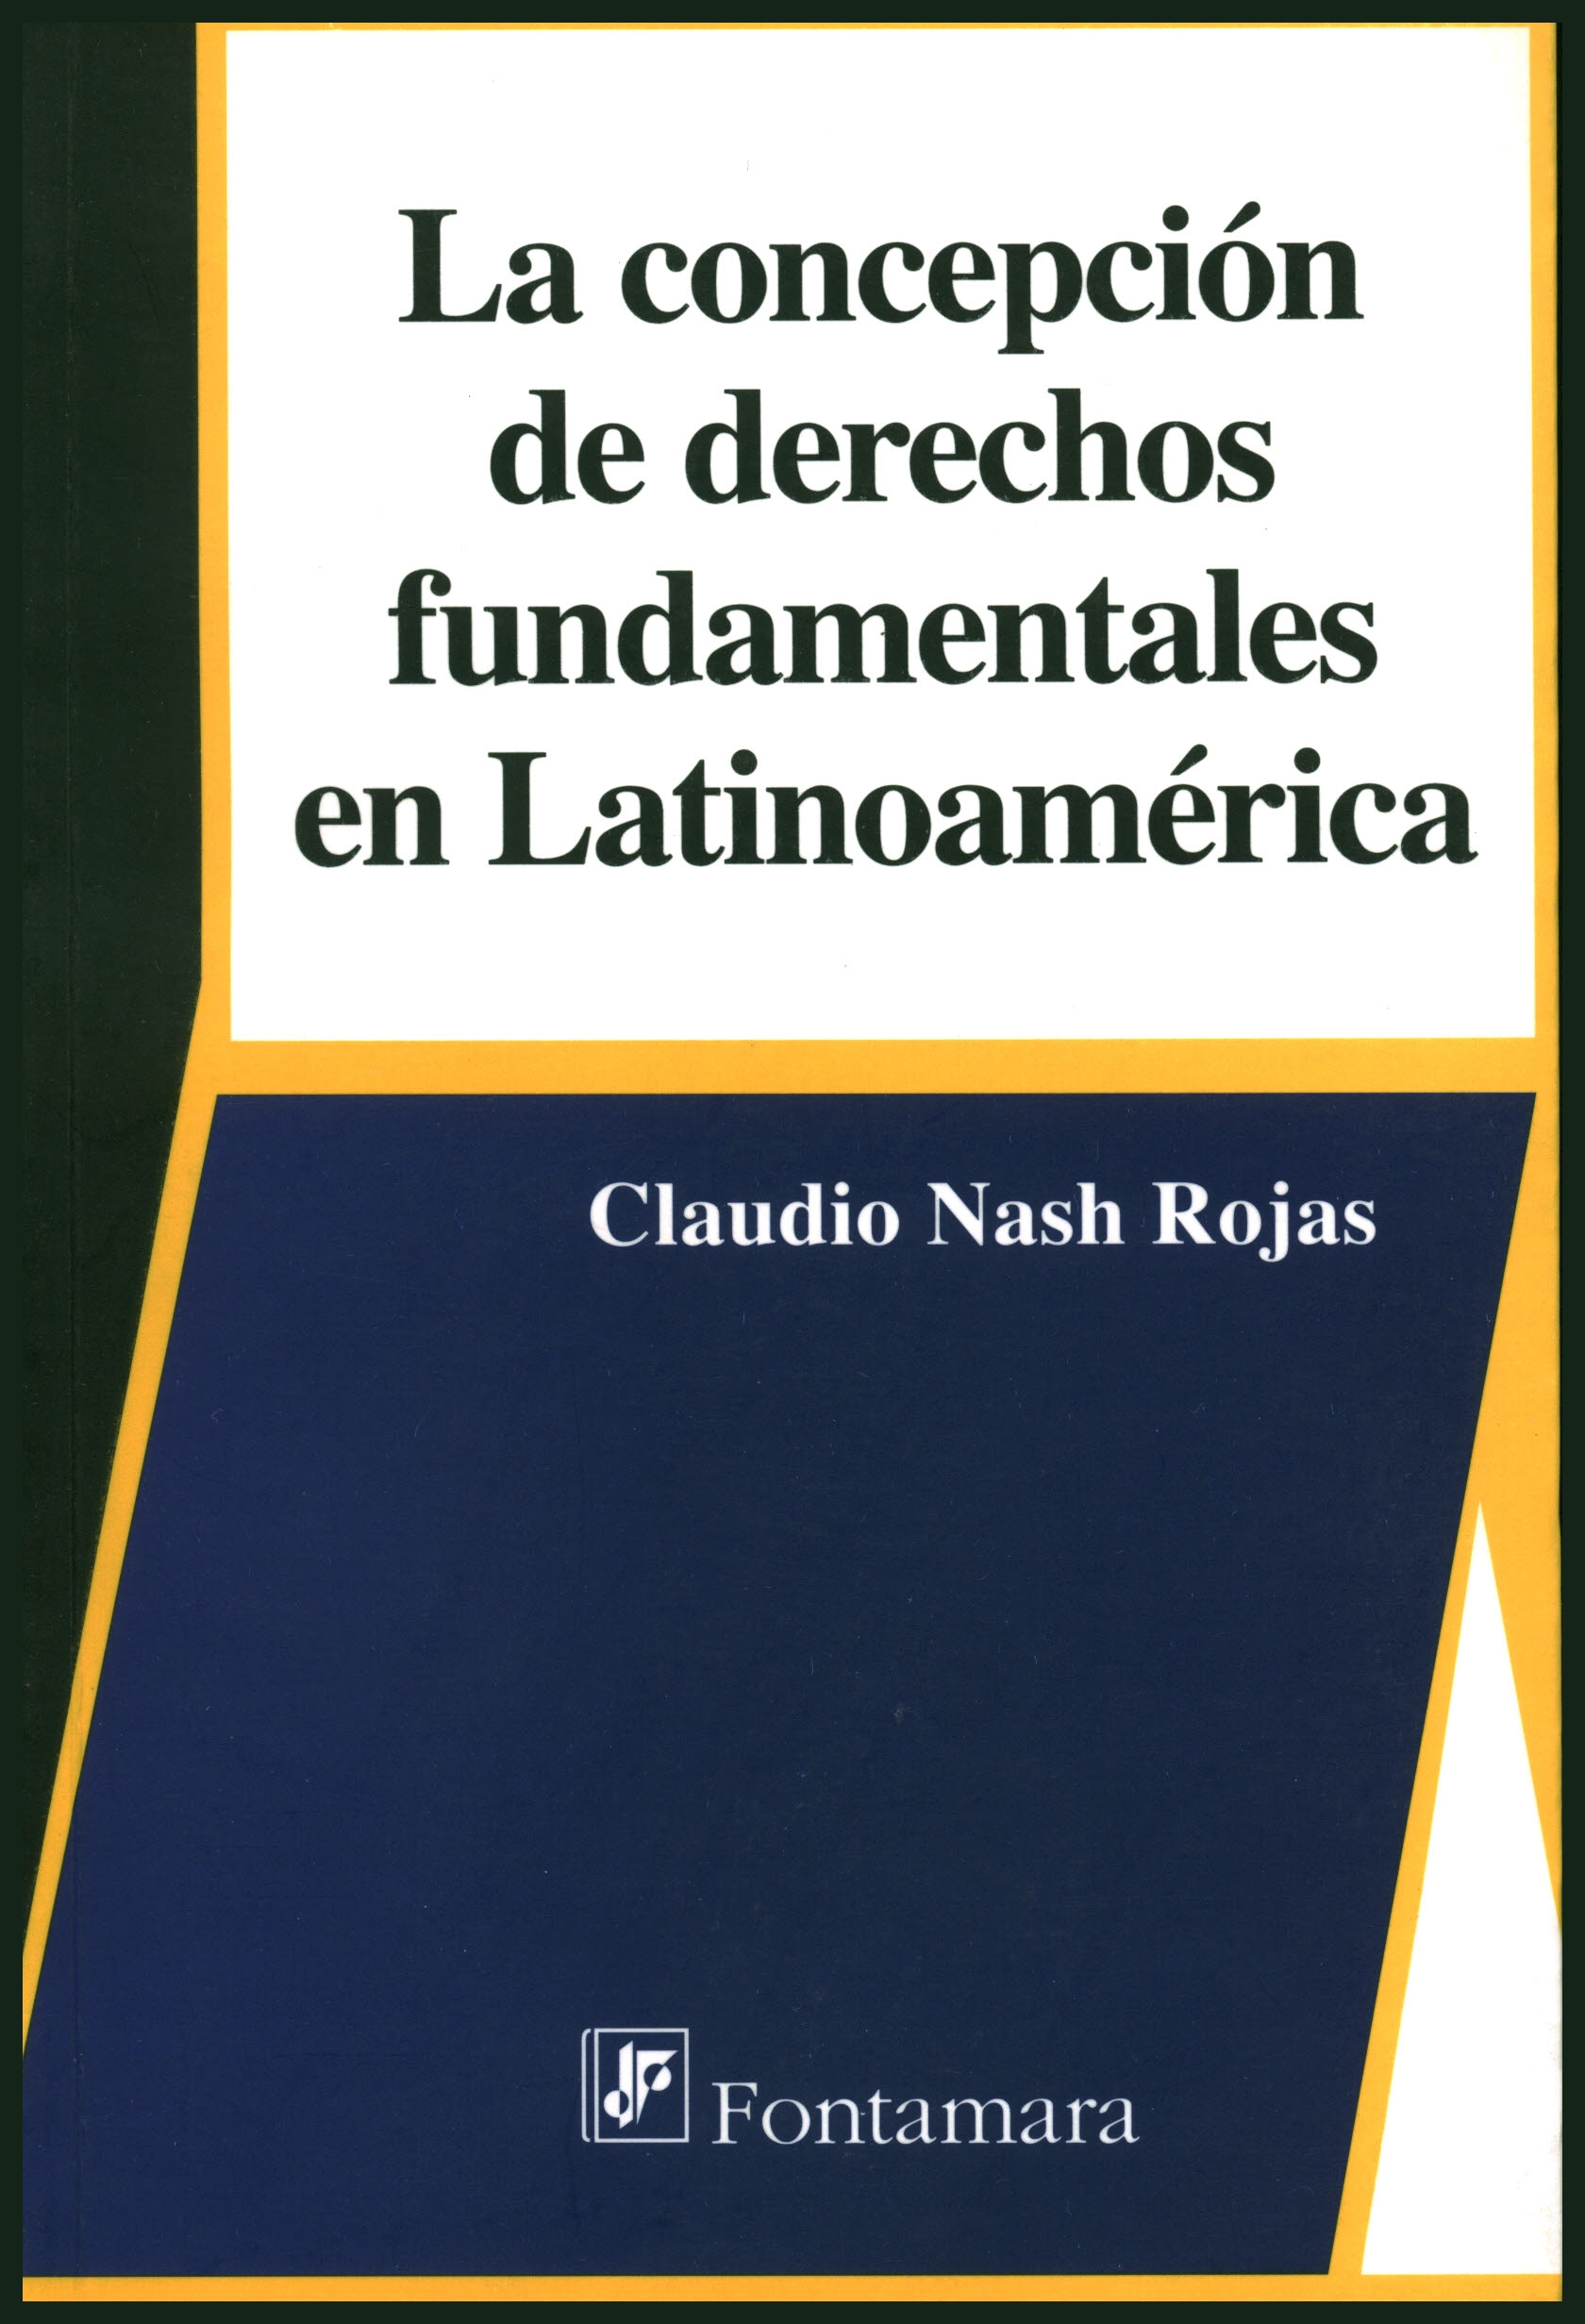 La concepción de derechos fundamentales en latinoamérica. Tendencias jurisprudenciales